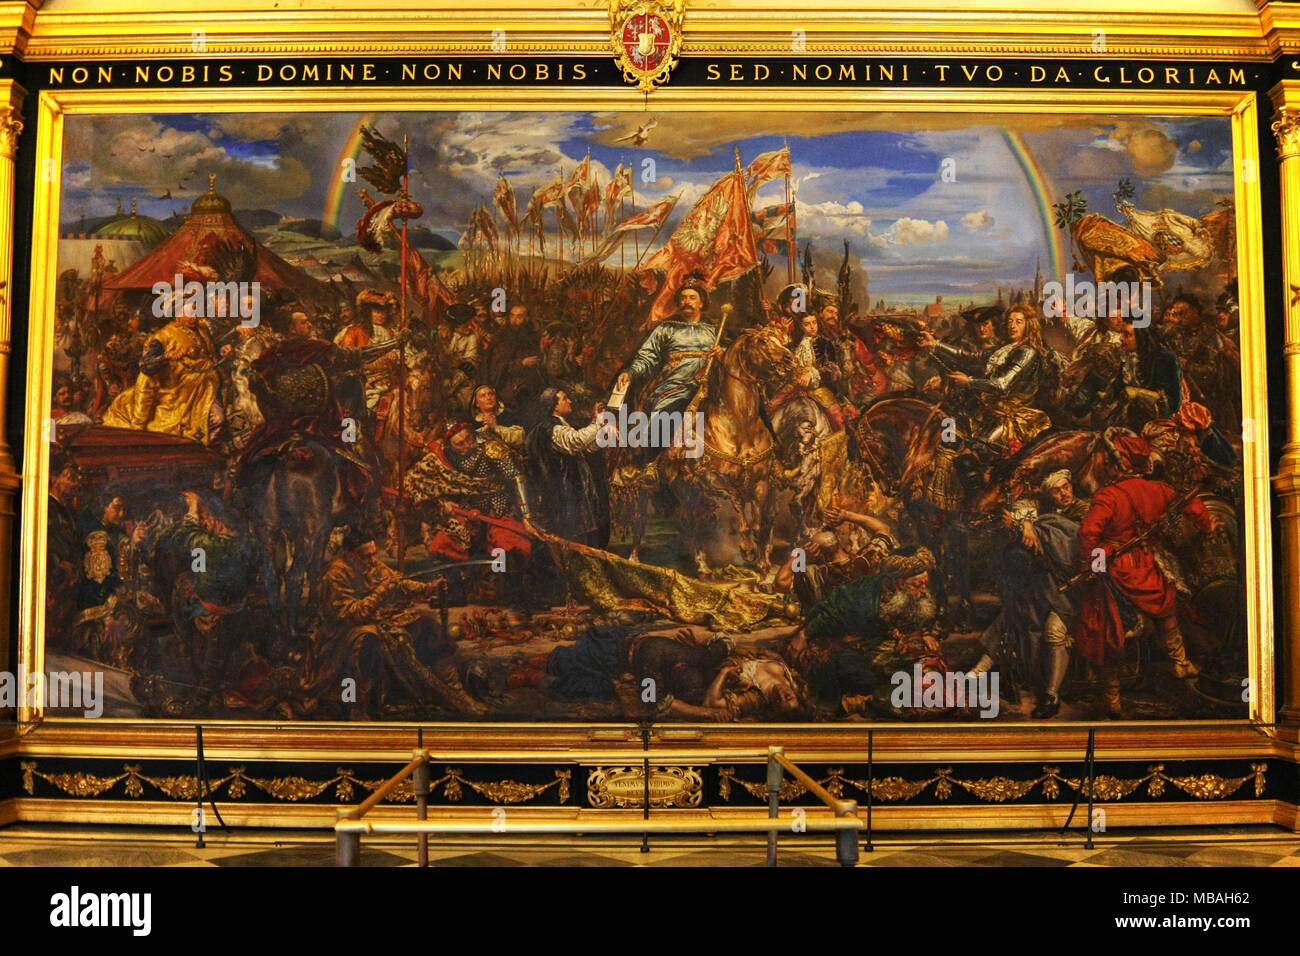 ROME, ITALIE - JUIN 17,2011 : Musée du Vatican. La peinture du roi Jan Sobieski à Vienne pendant la guerre avec les Turcs. Peinture de Jan Matejko. Banque D'Images